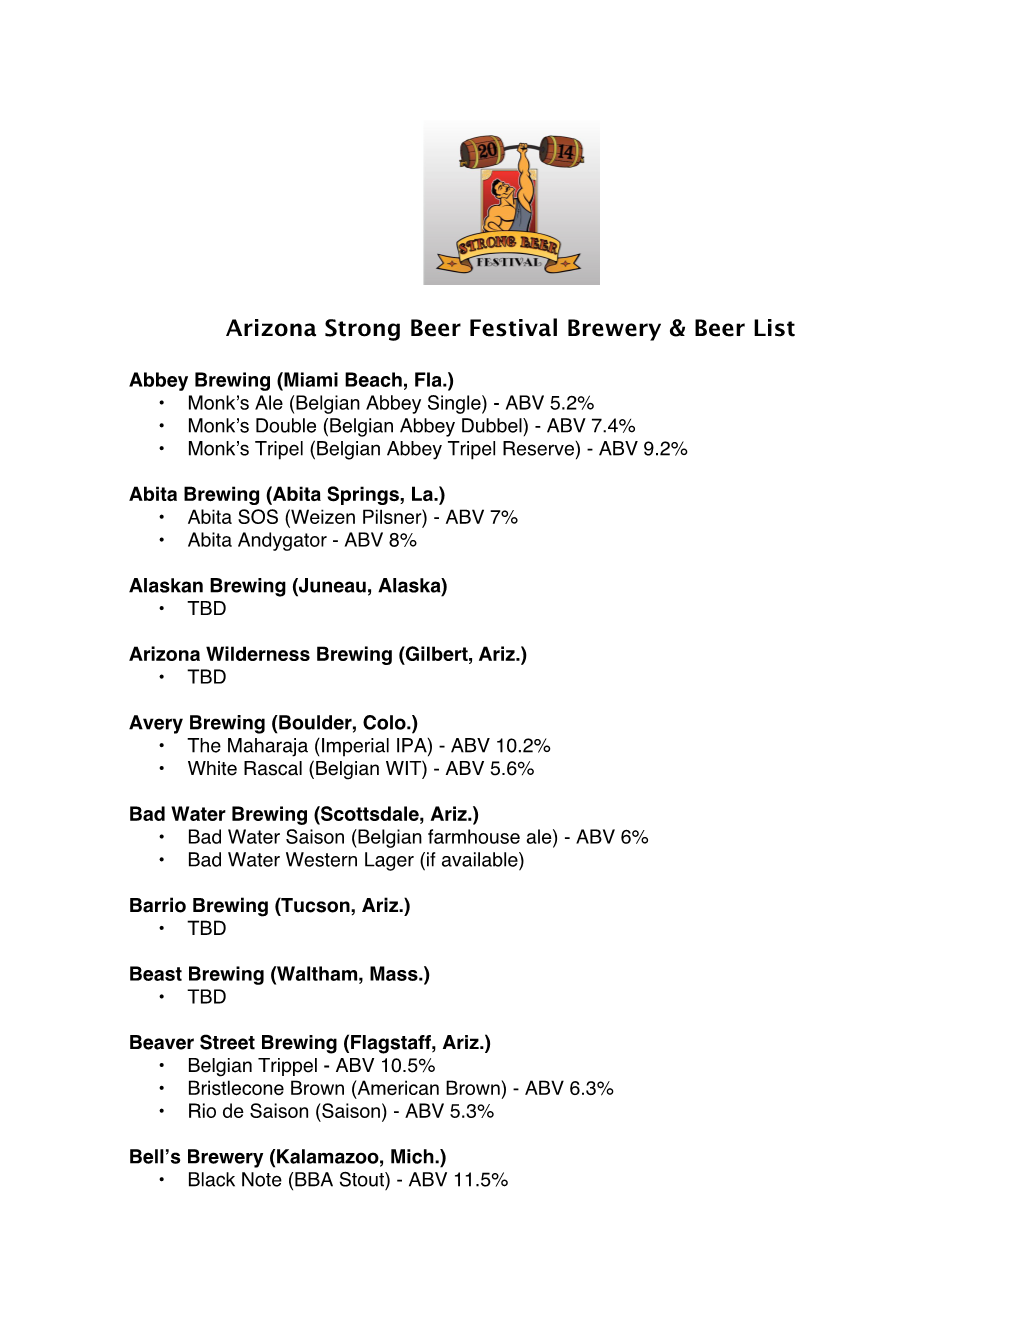 2014 ASBF Beer List